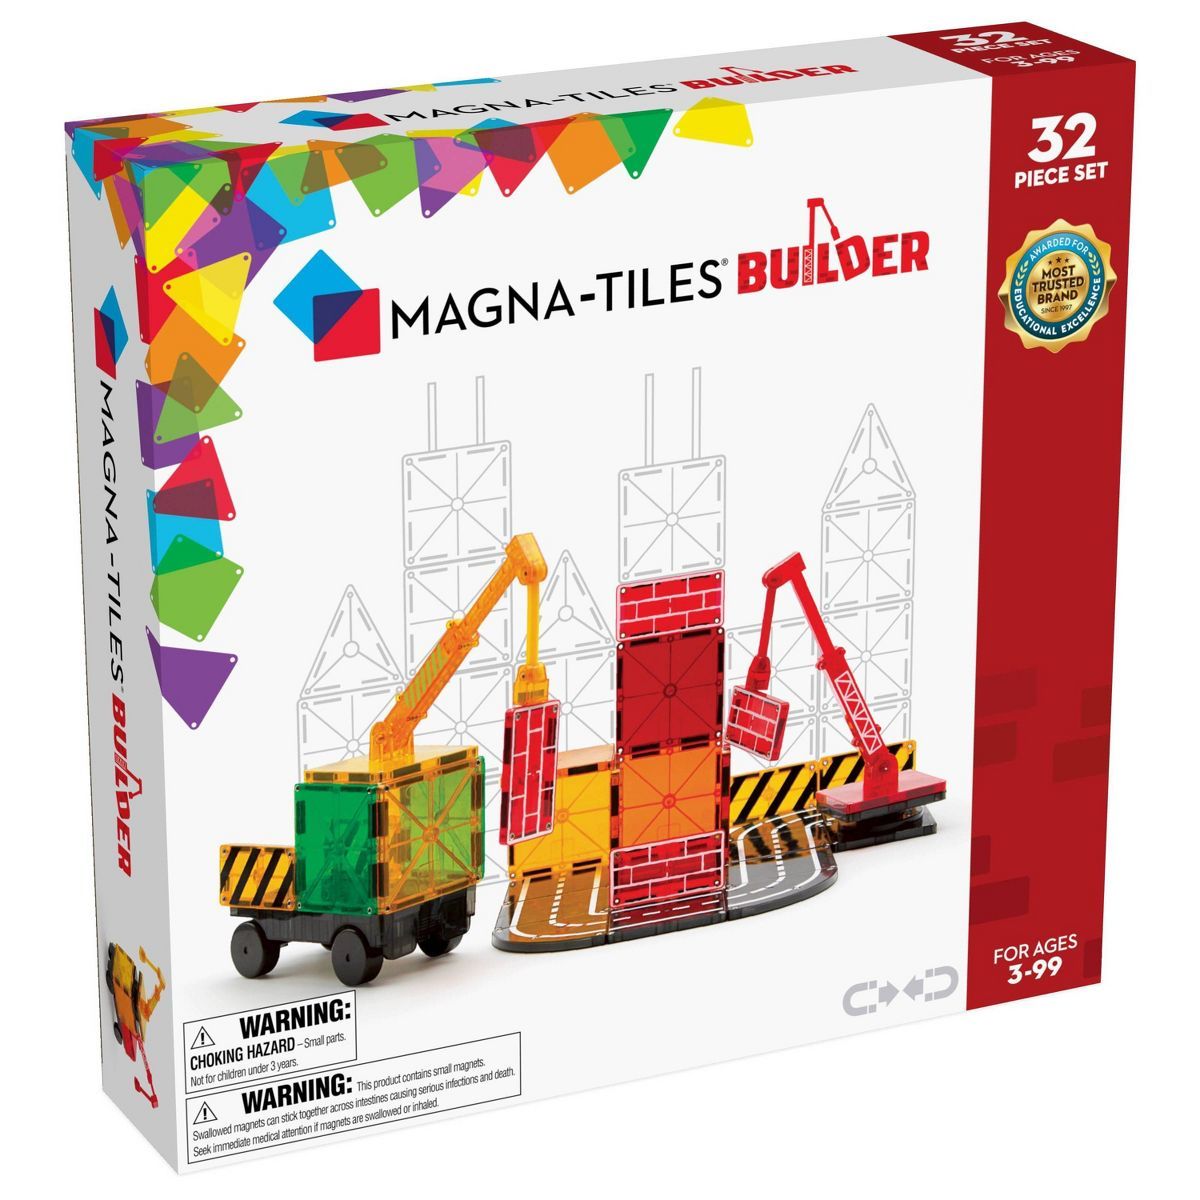 MAGNA-TILES Builder | Target